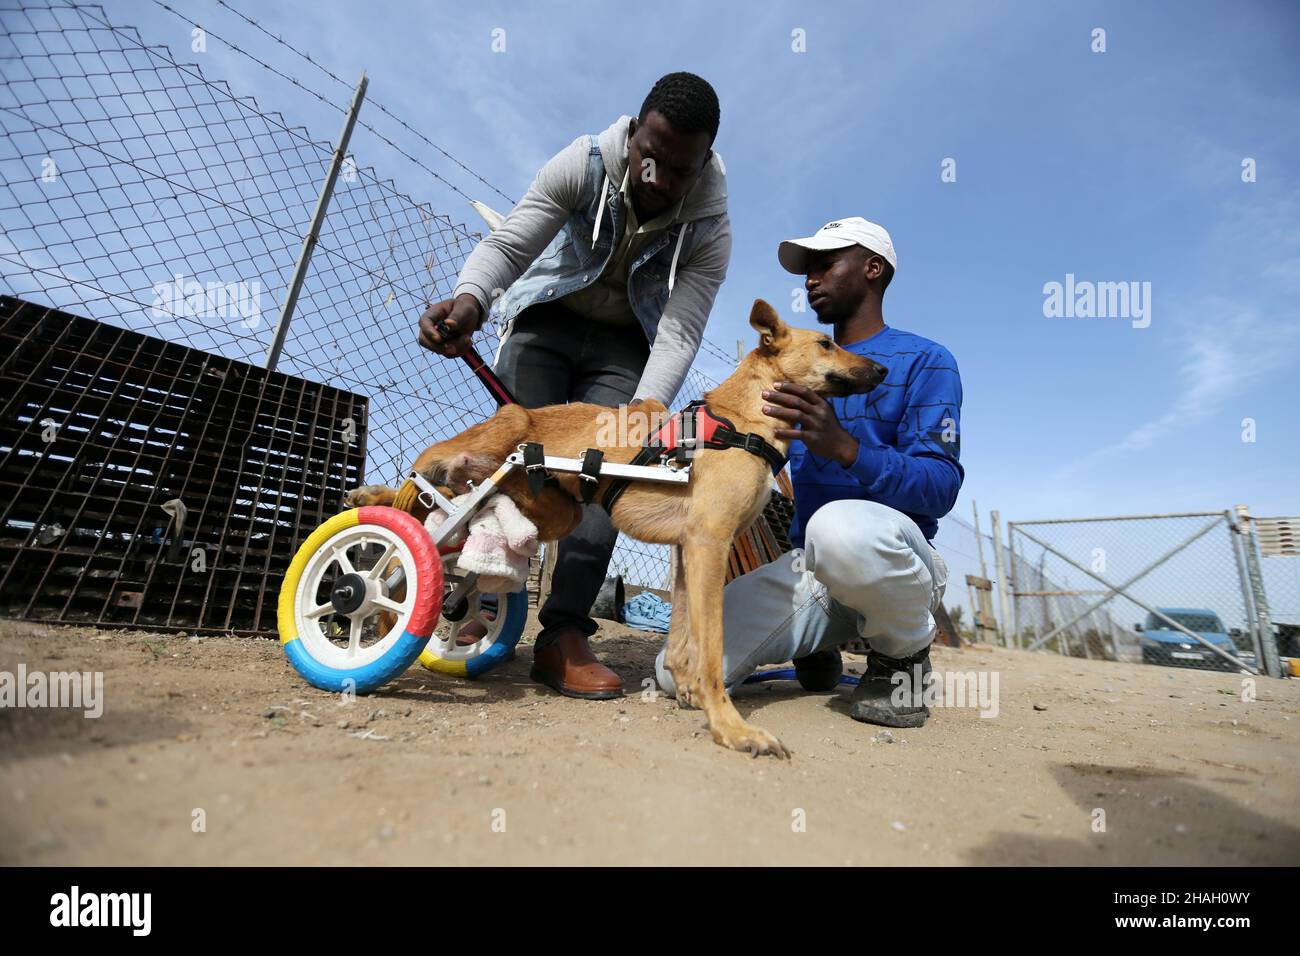 El ingeniero palestino Ismail Al-Aer y el cuidador de animales dijeron que Al-Aer puso un perro paralizado en una nueva silla de ruedas en la ciudad de Gaza, el 6 de diciembre de 2021. Fue un momento de congelación para Lucy, un perro paralizado, cuando los cuidadores de animales le pusieron una silla de ruedas para ayudarla a moverse de nuevo. Said Al-Aer trabaja con su padre para cuidar de 300 perros callejeros y 80 gatos. Foto tomada el 6 de diciembre de 2021. REUTERS/Ibraheem Abu Mustafa Foto de stock